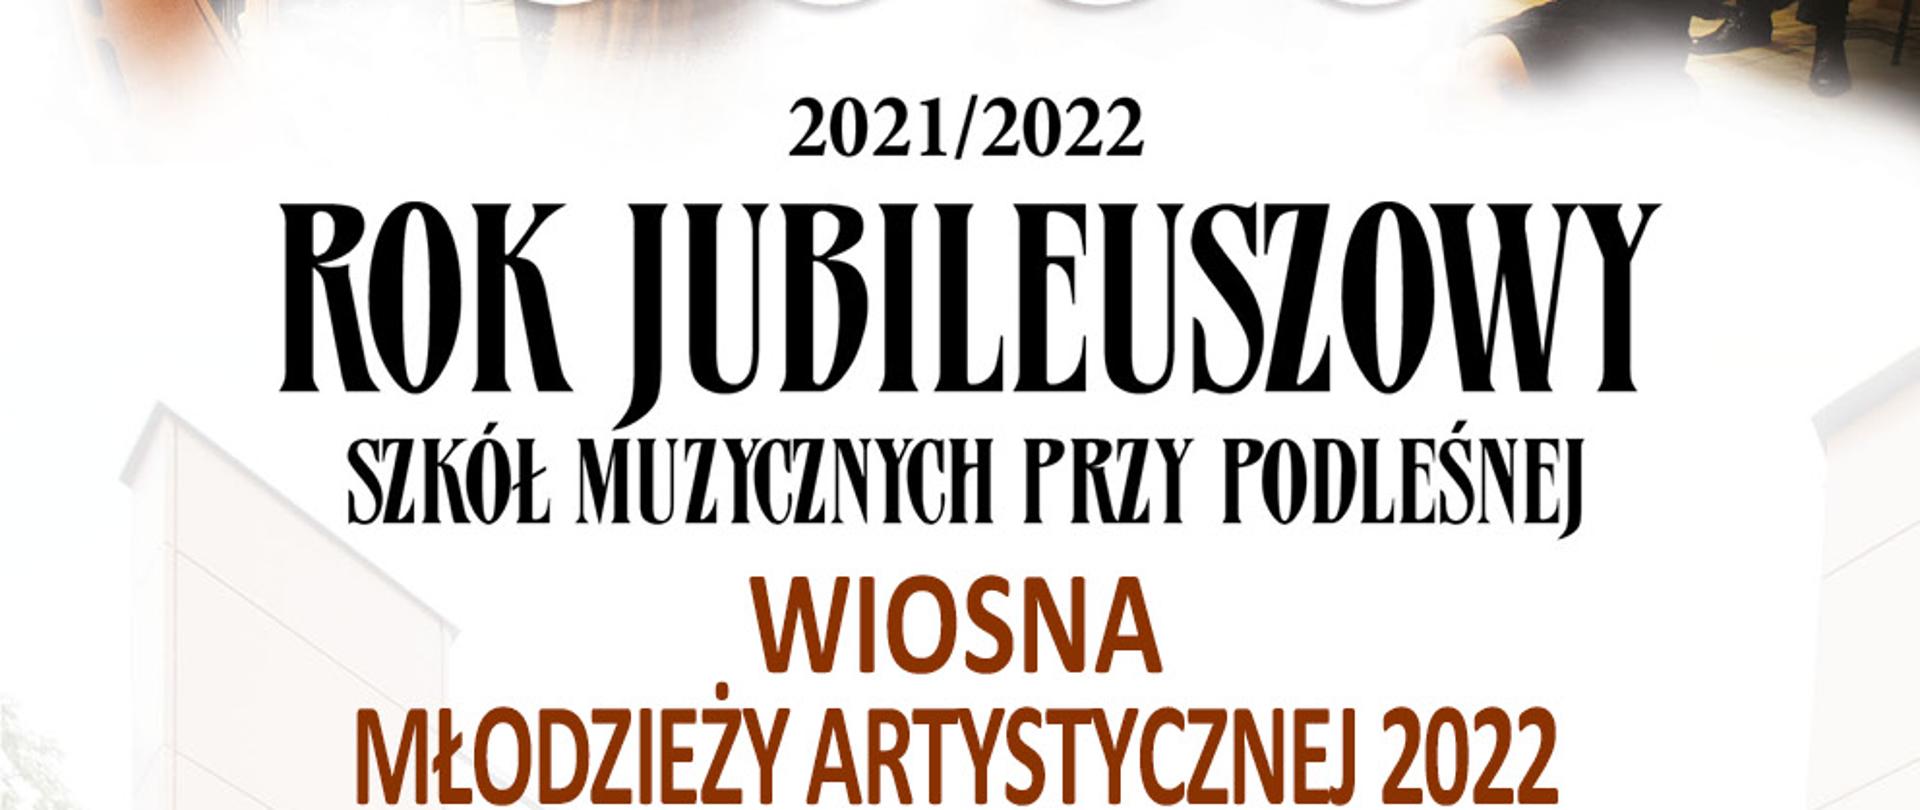 plakat z zdjęciem szkoły w nocy z informacjami o koncercie wiosna młodzieży artystycznej 2022 który ma się odbyć 22 marca o godzinie 18:00